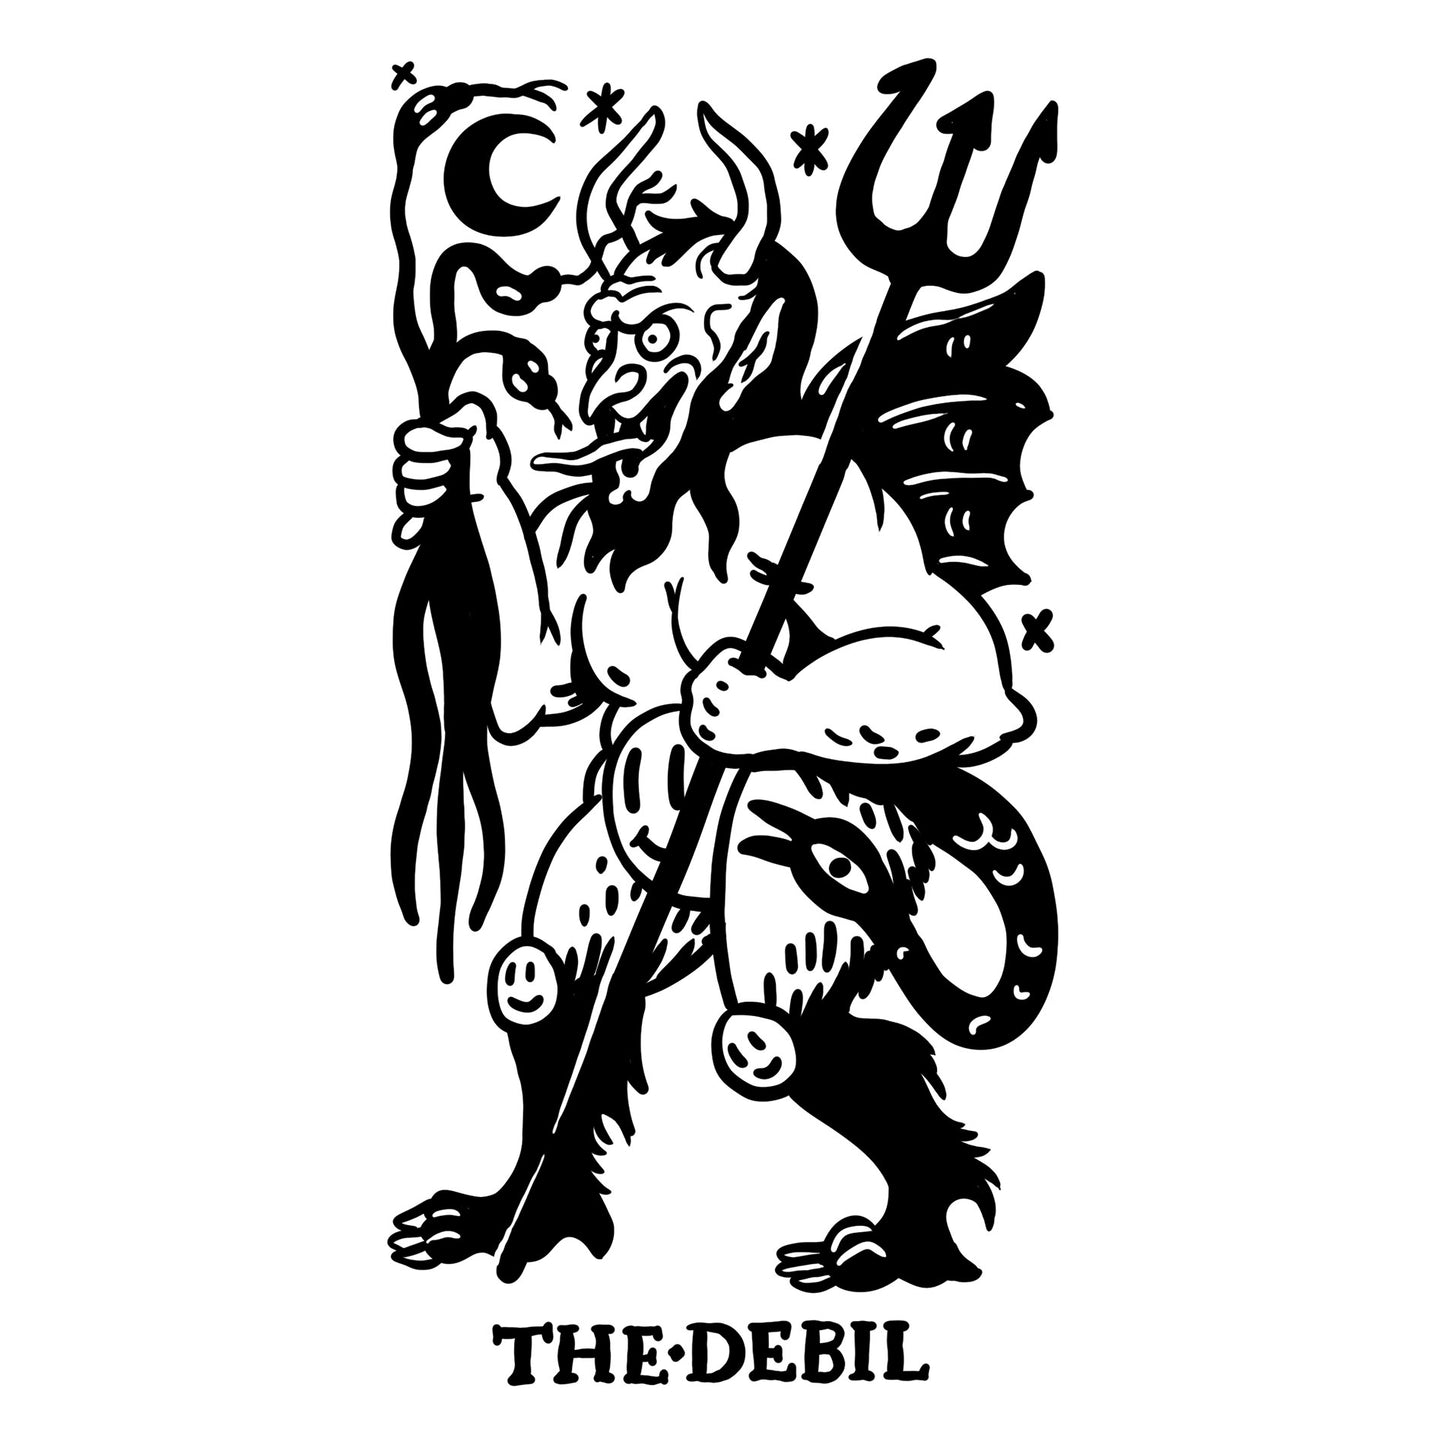 The Debil